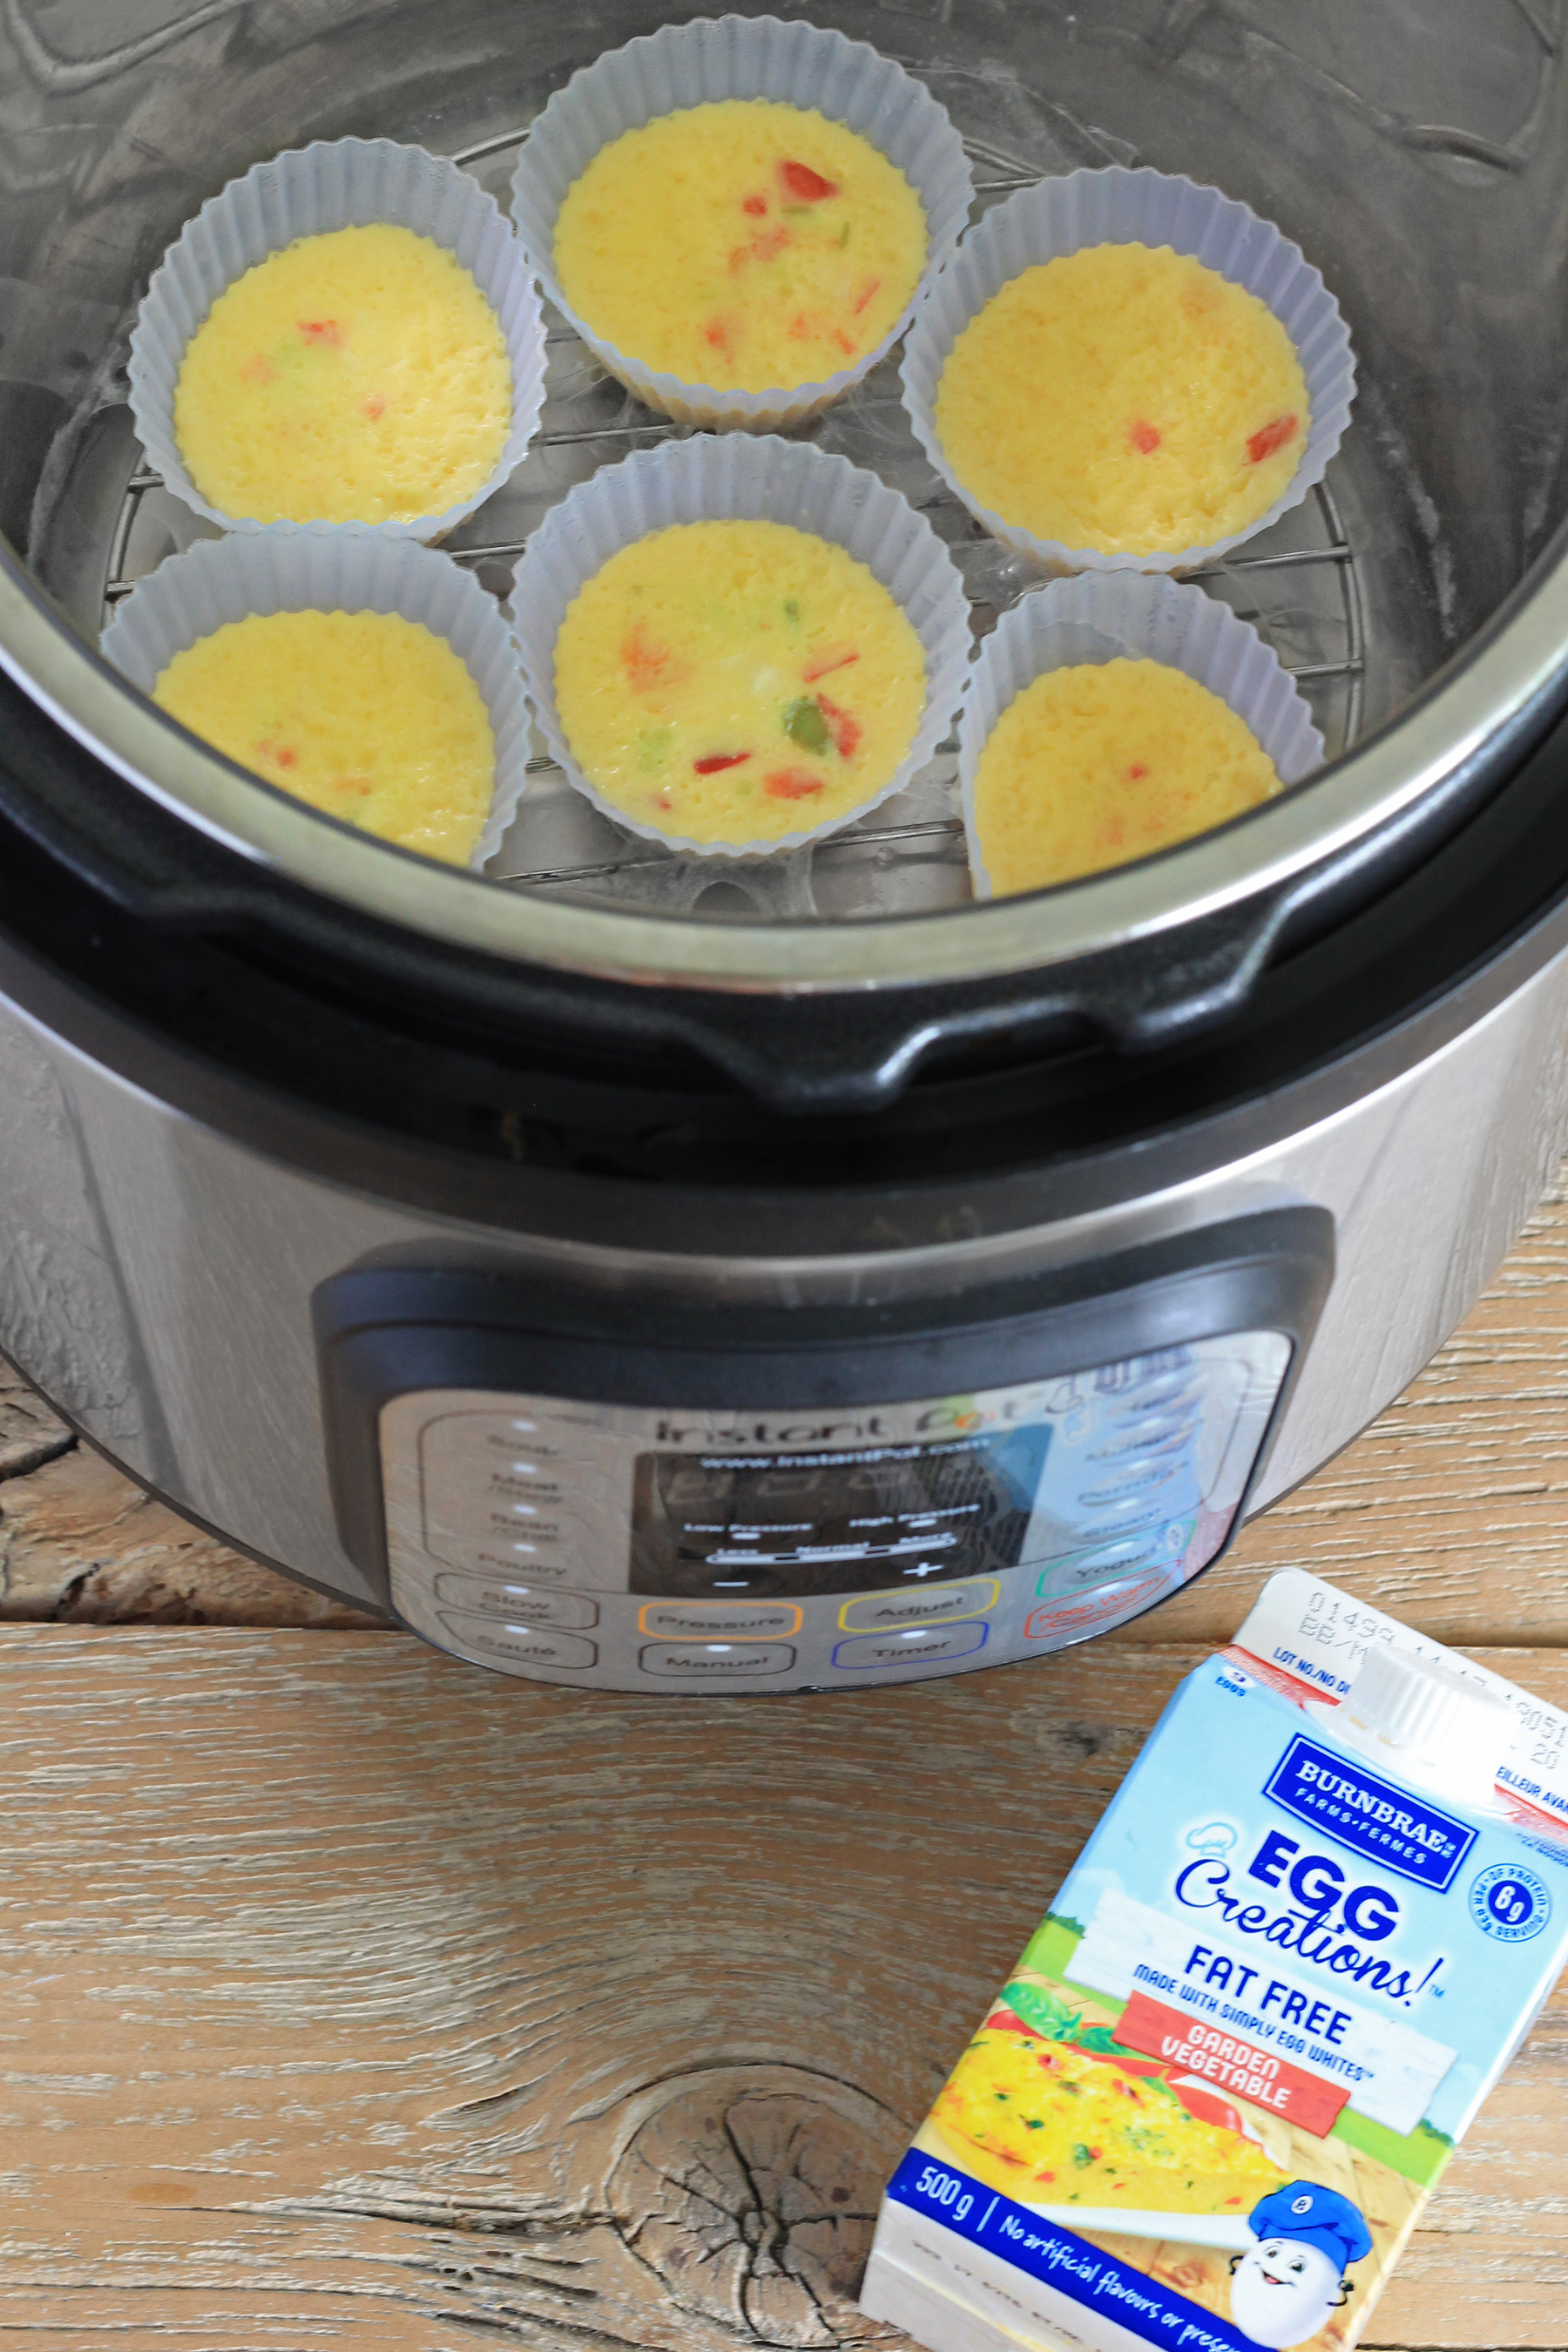 Keto Friendly 5 Minute Instant Pot Egg Muffins